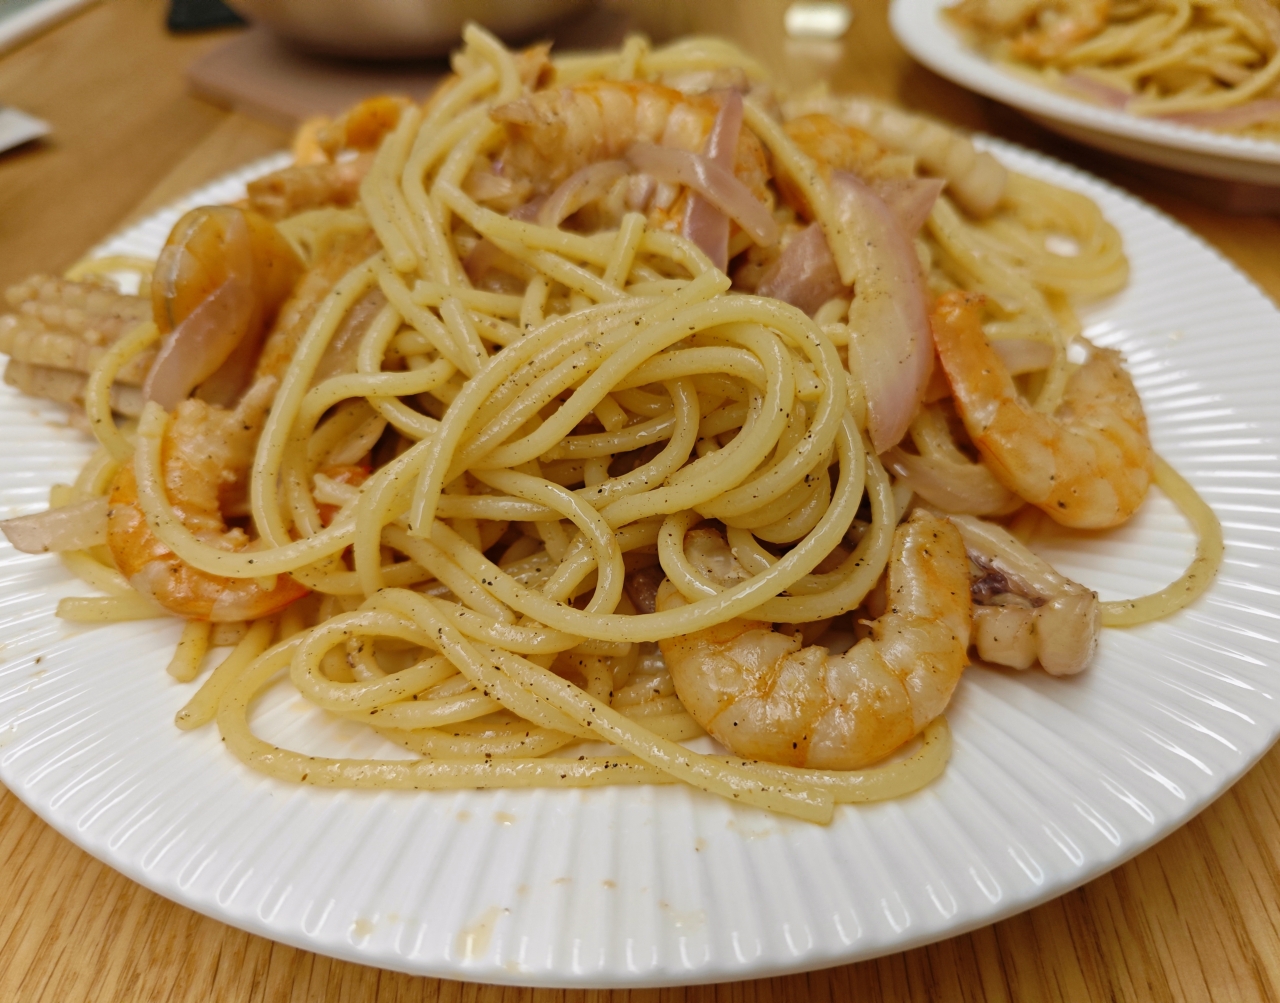 白葡萄酒海鲜意面（Seafood Pasta with White Wine）